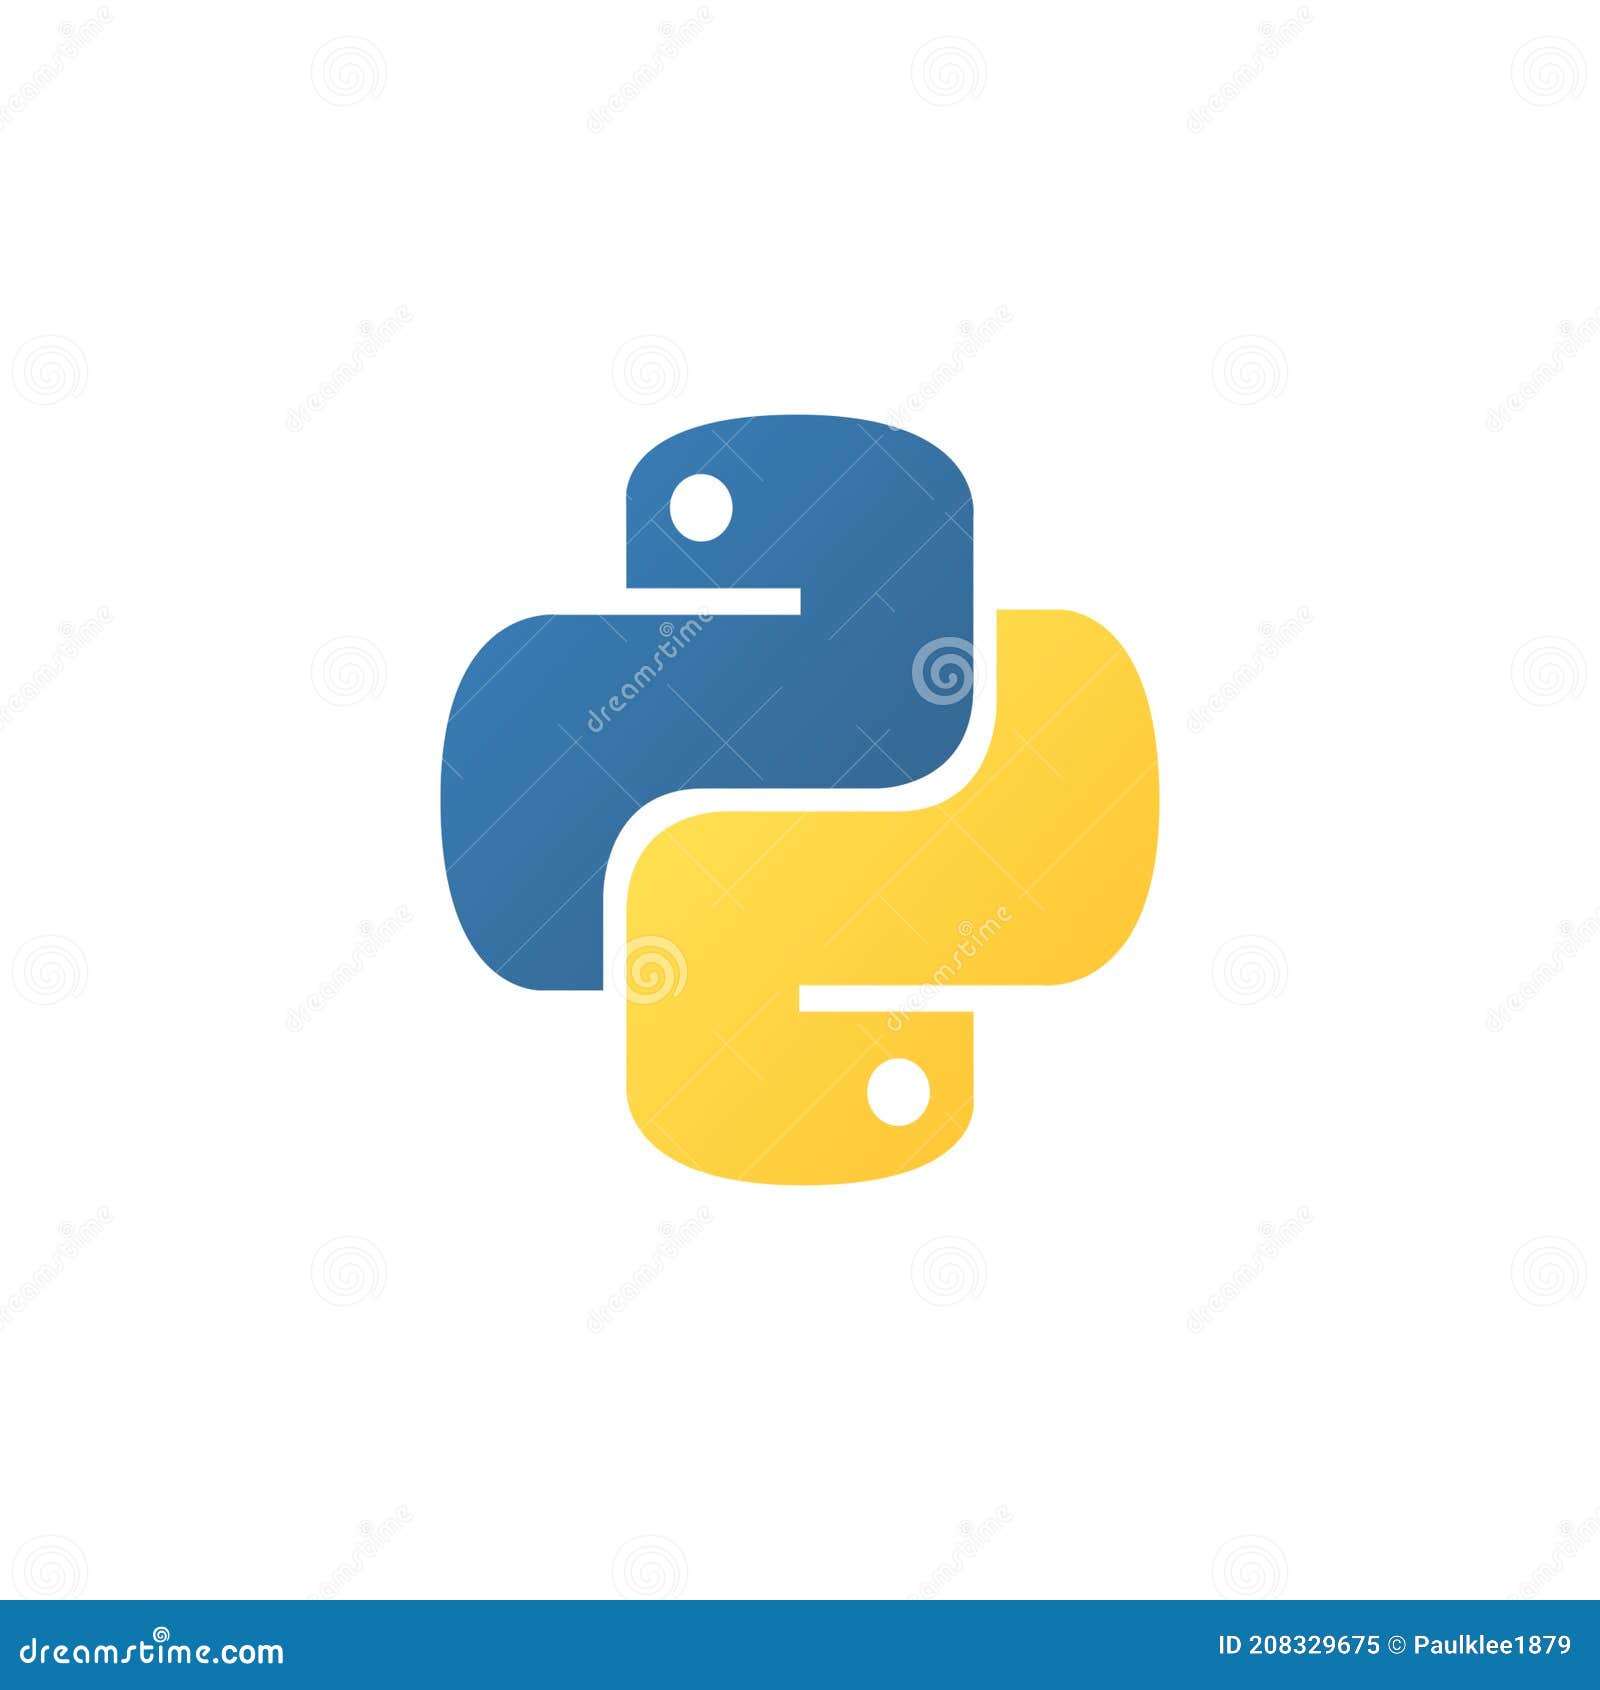 Python: Hãy tìm hiểu về ngôn ngữ lập trình được yêu thích nhất hiện nay với hình ảnh động và sinh động về Python. Cùng khám phá những tính năng tuyệt vời của Python và đưa kỹ năng lập trình của bạn lên một tầm cao mới nhé.